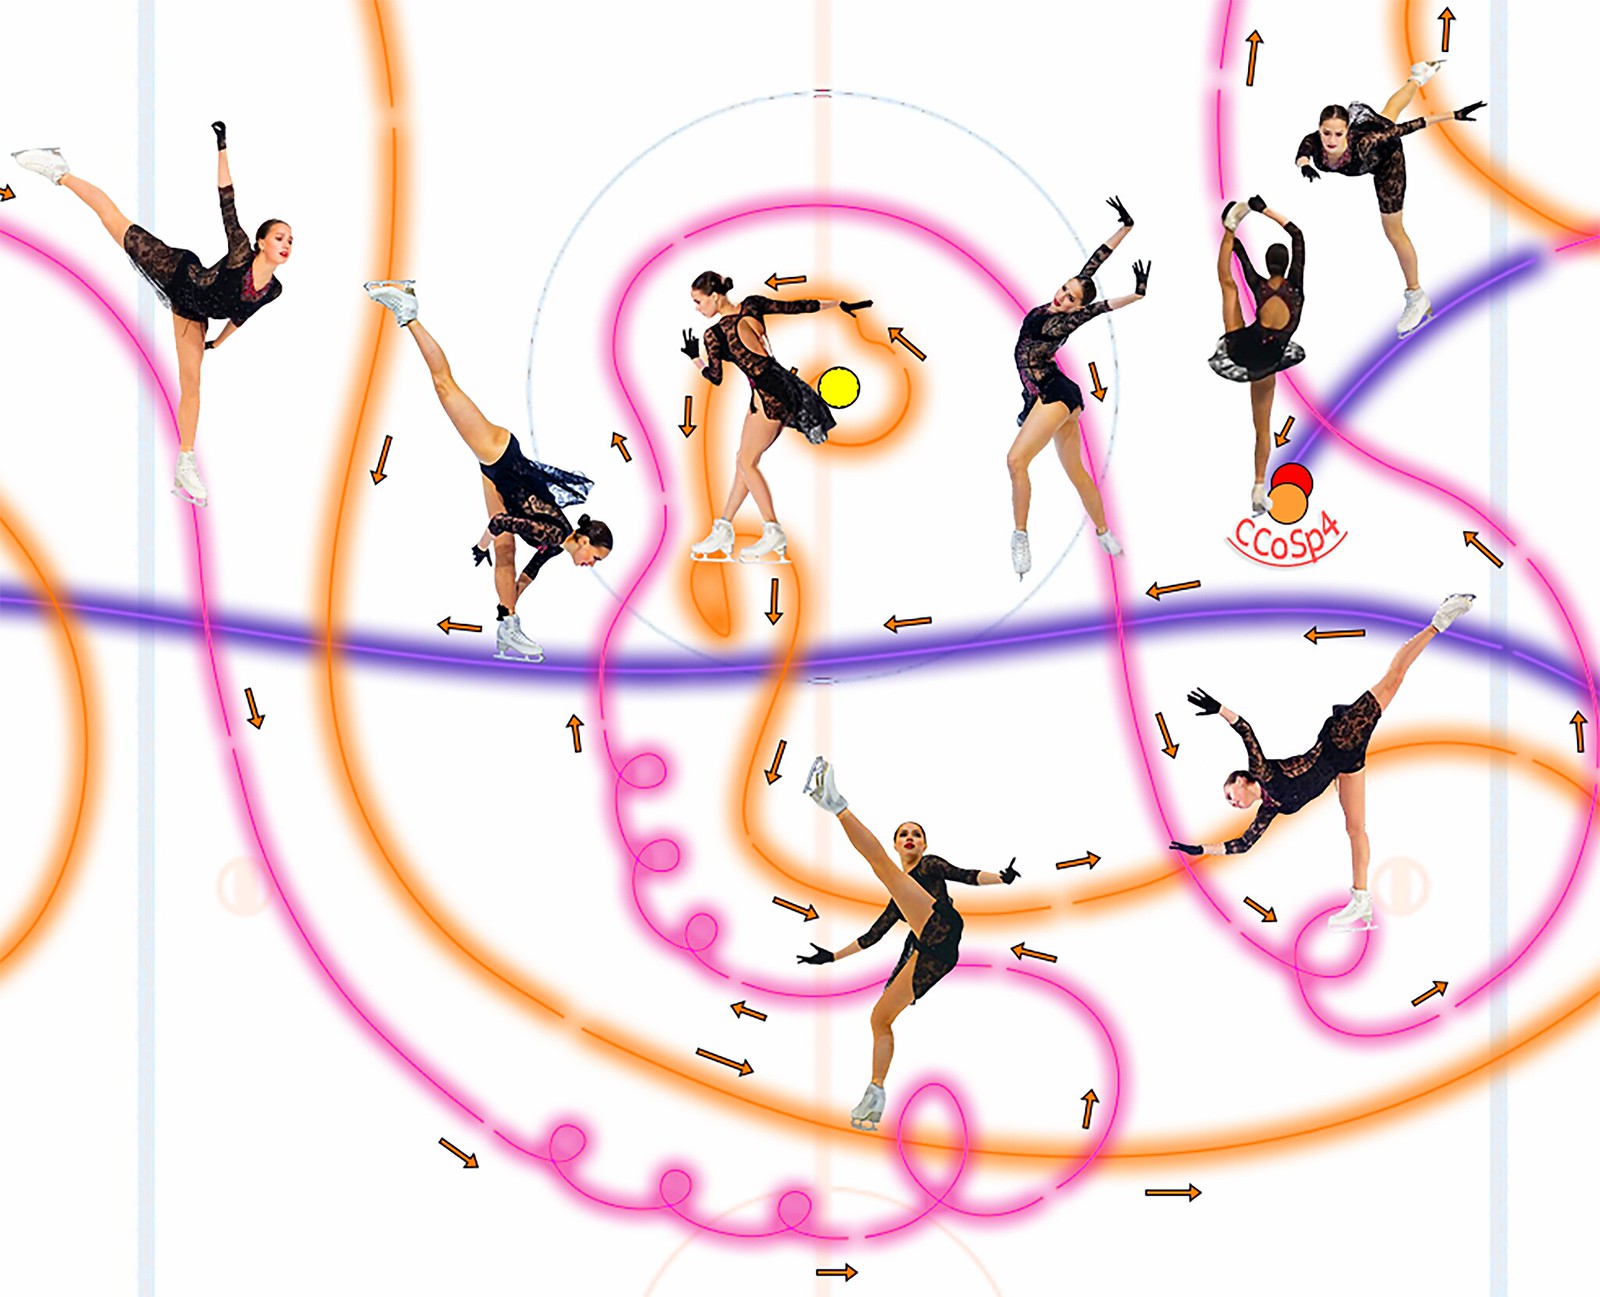 Анимация хореографической схемы КП Алины Загитовой «Me Voy». Новый уровень проекта